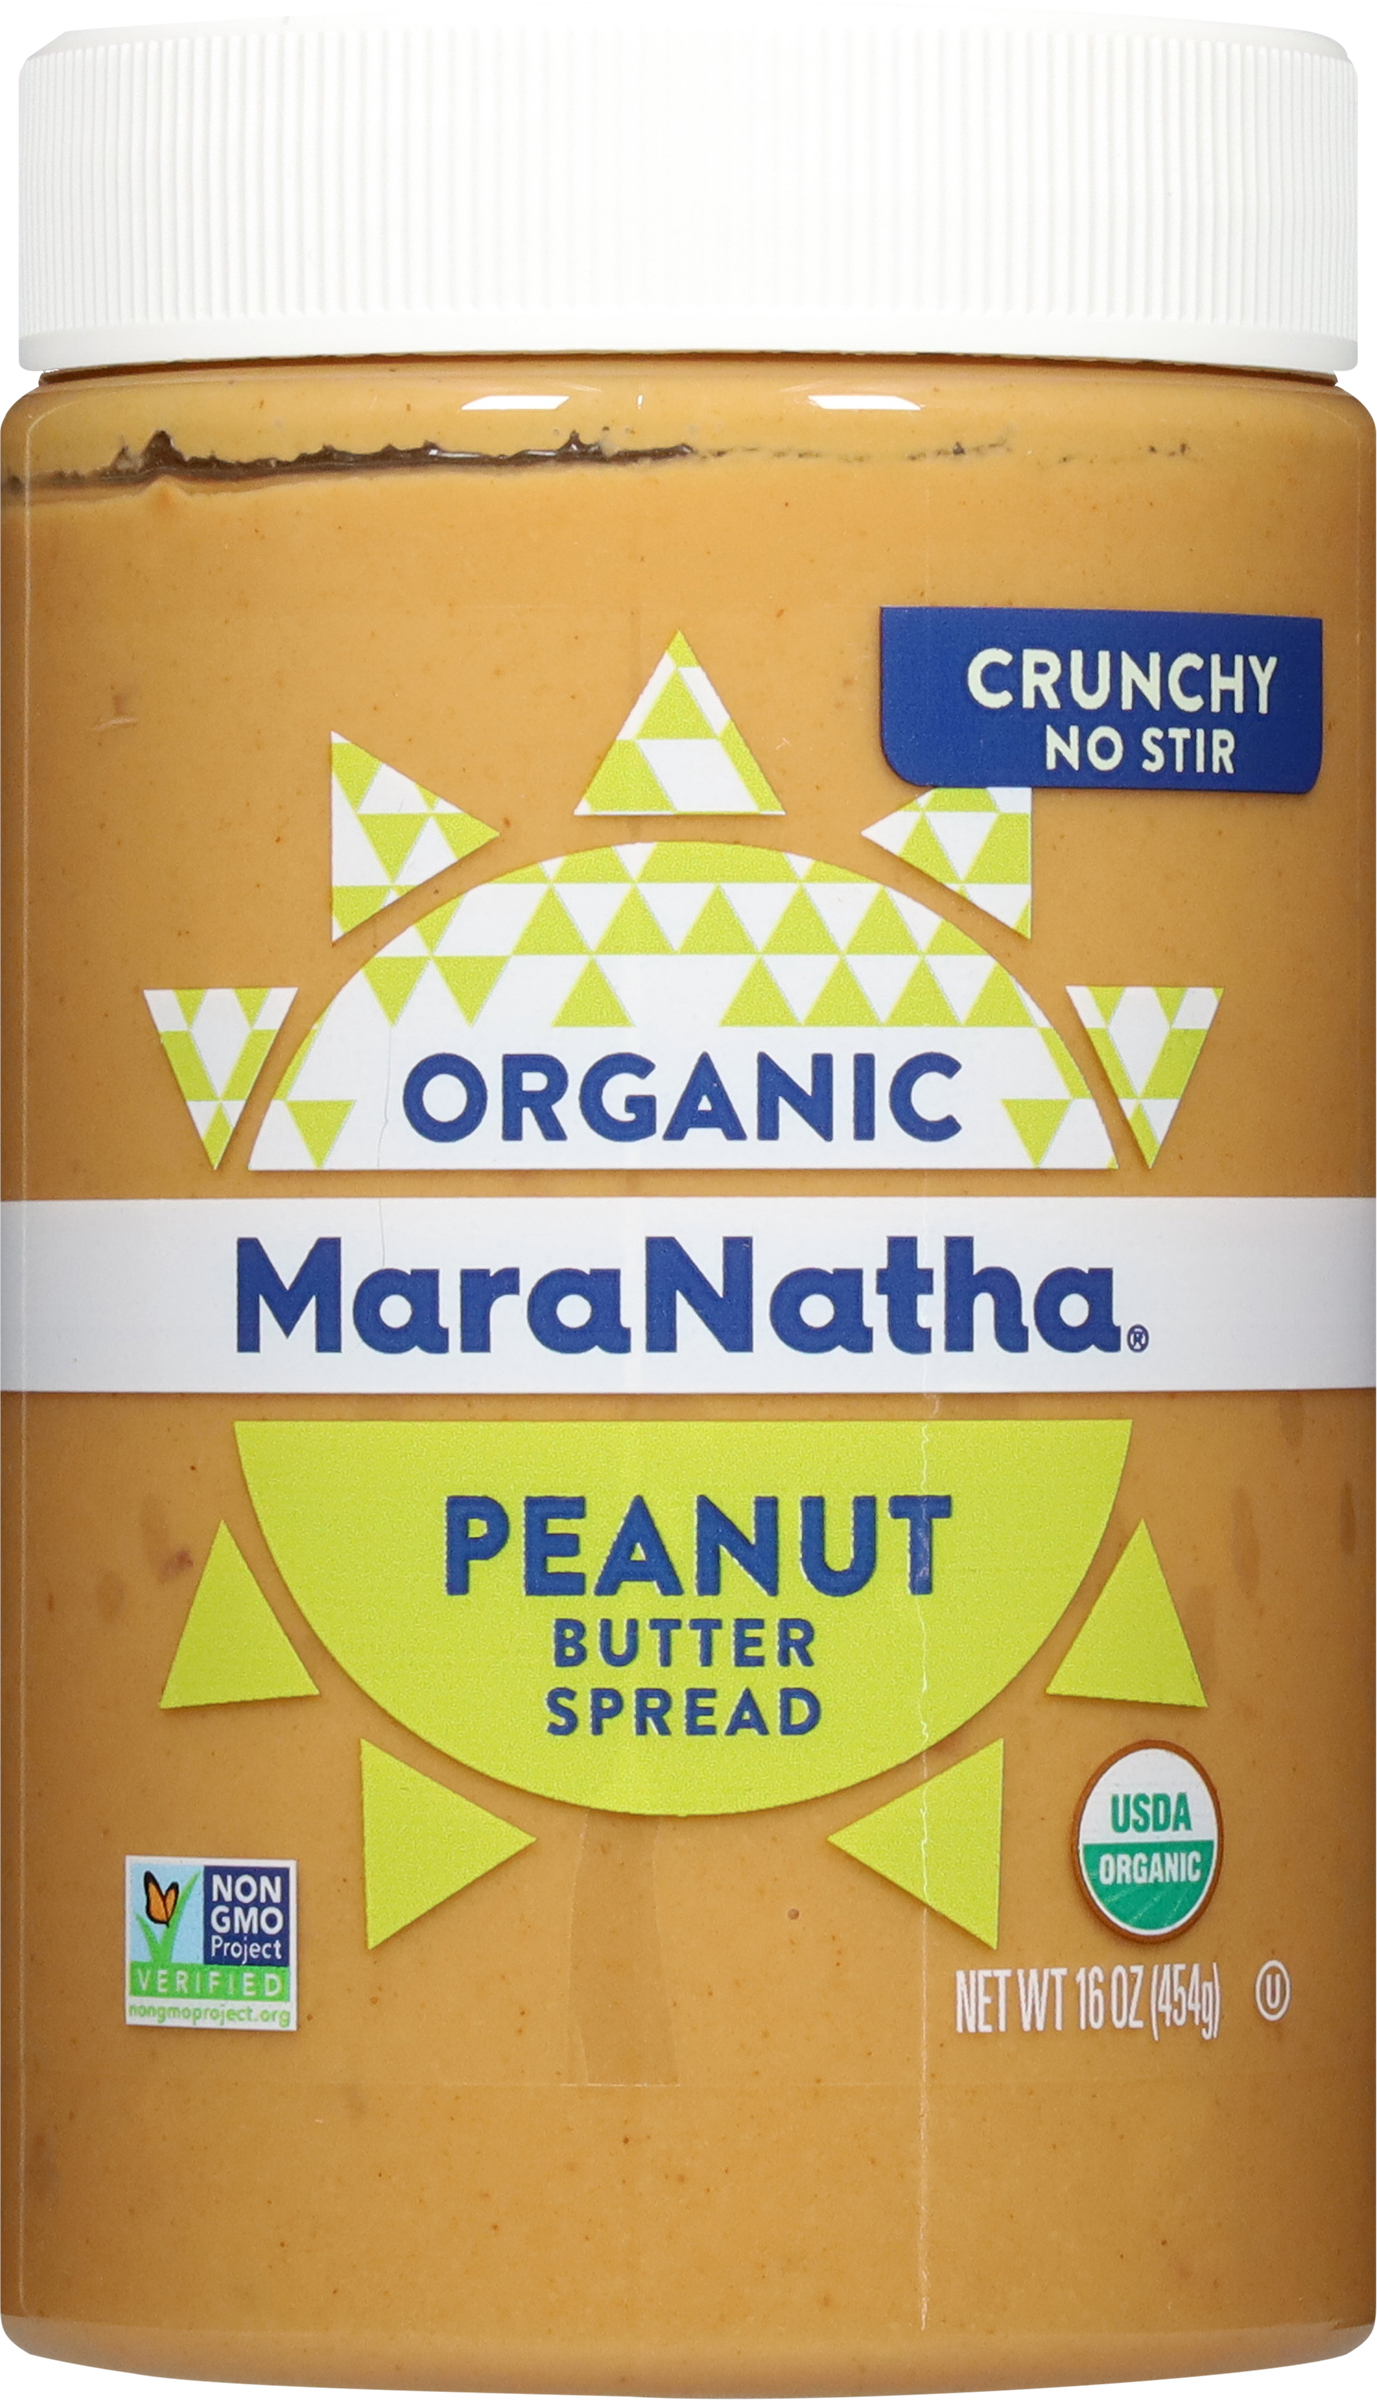 Peanut Butter Spread, Organic, No Stir, Crunchy